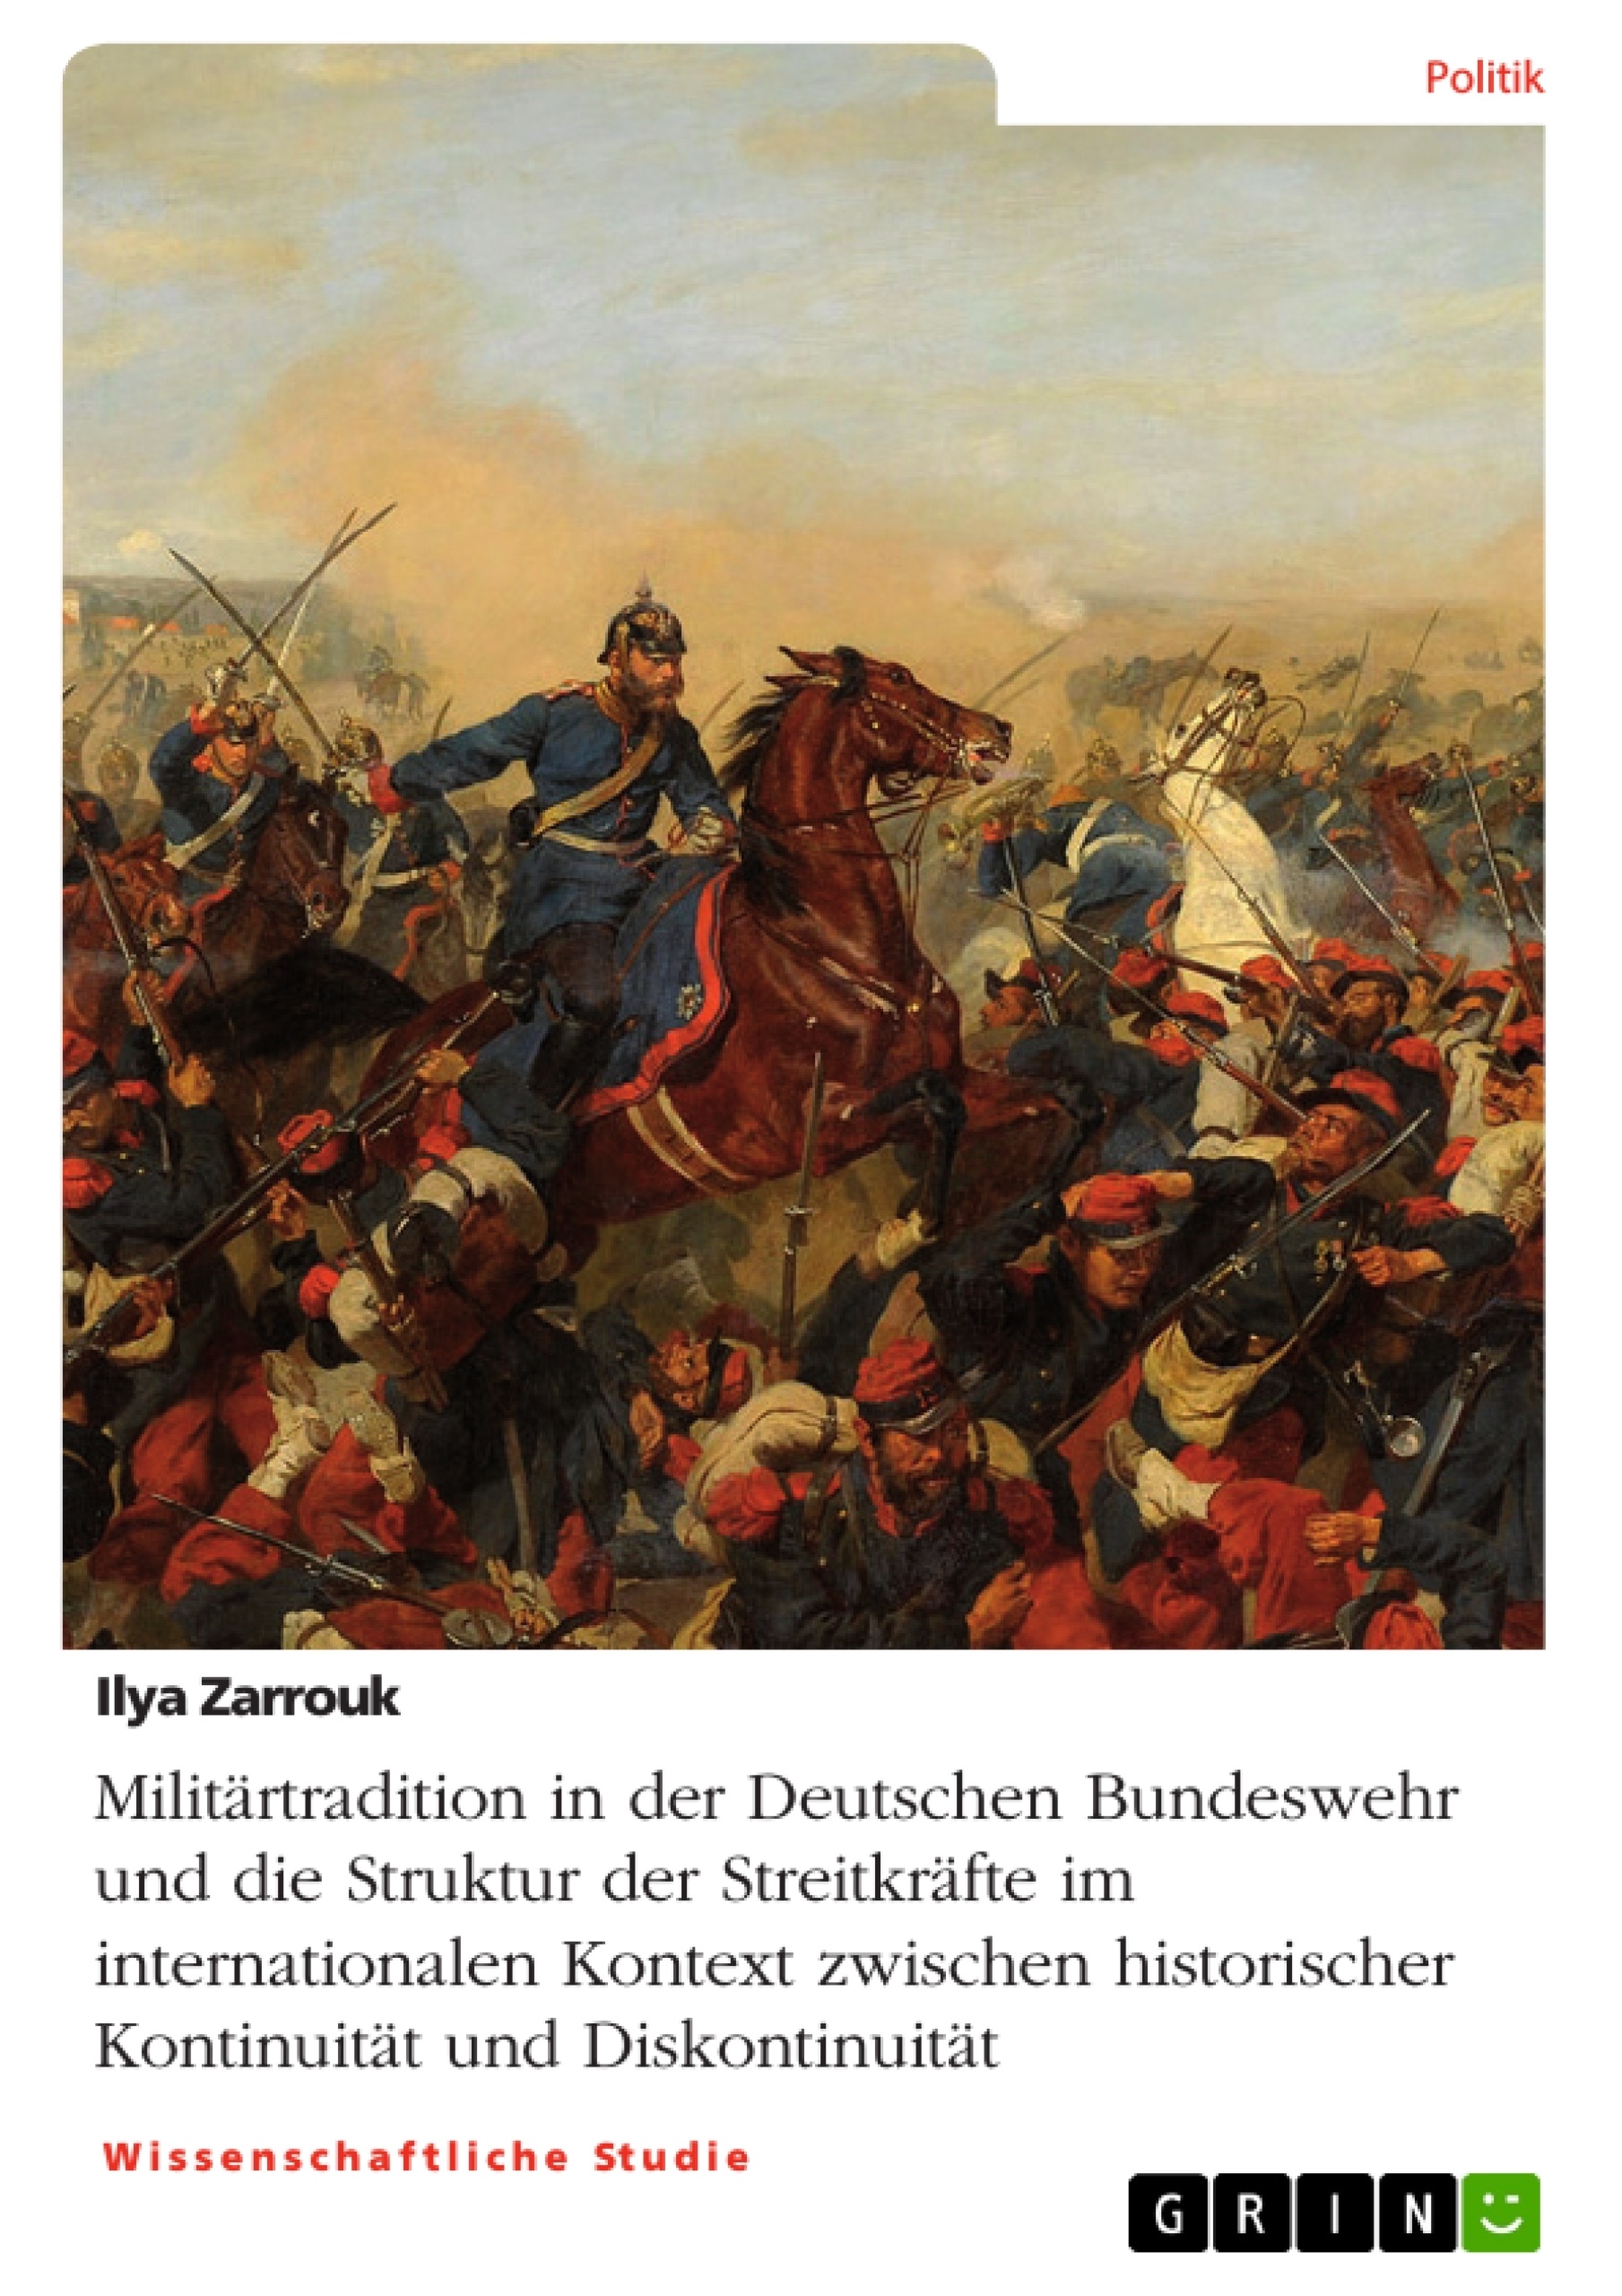 Titel: Militärtradition in der Deutschen Bundeswehr und die Struktur der Streitkräfte im internationalen Kontext zwischen historischer Kontinuität und Diskontinuität